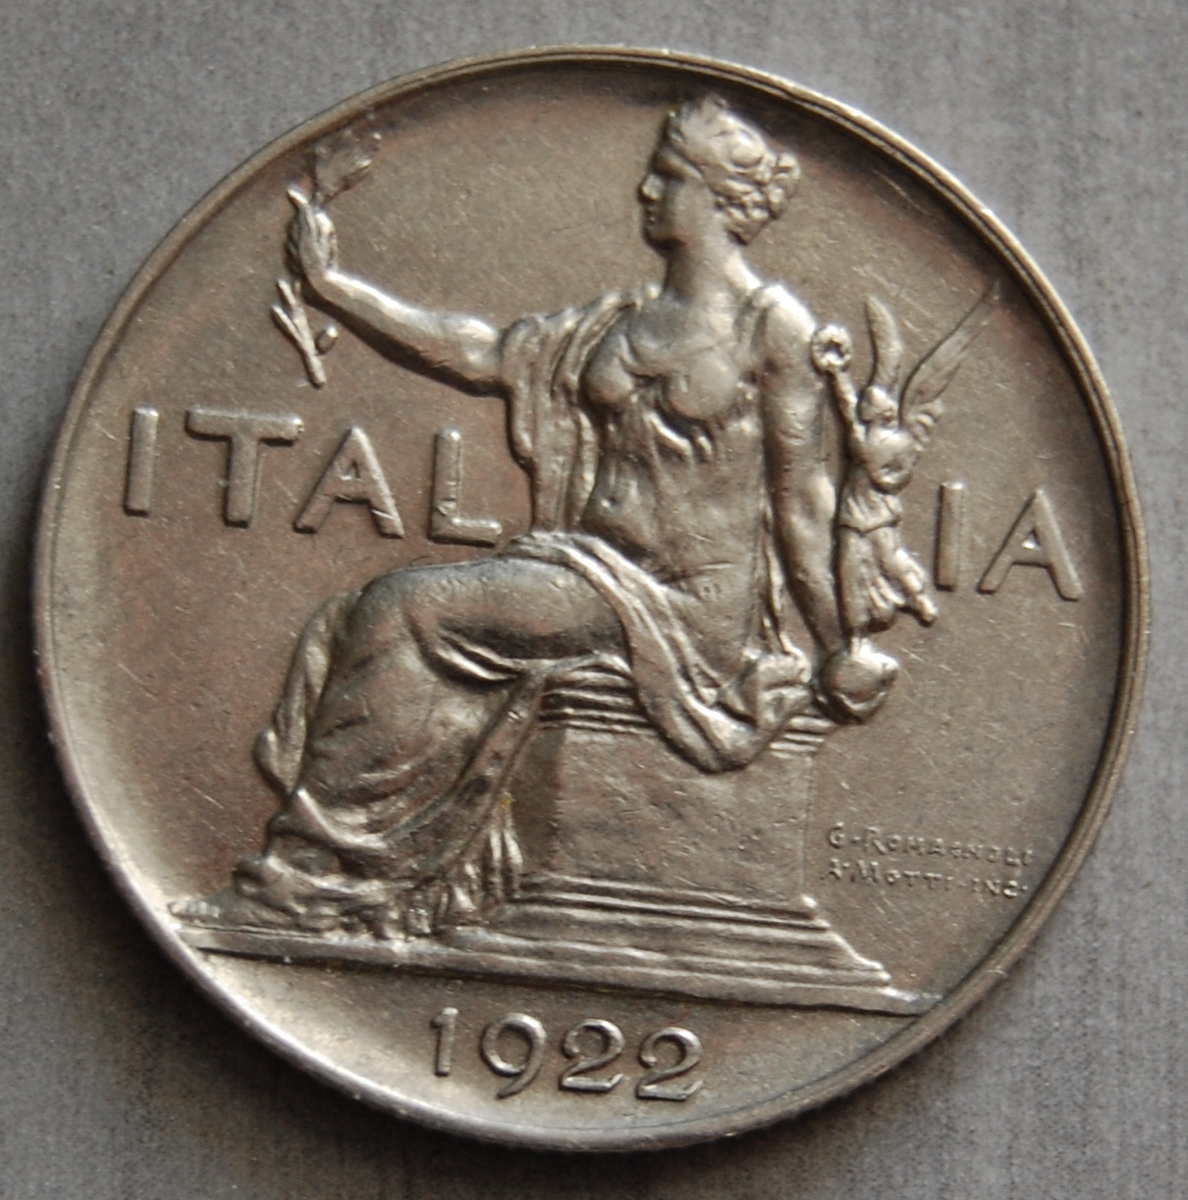  Italien 1 Lira Lire 1922 KM 62  VZ   